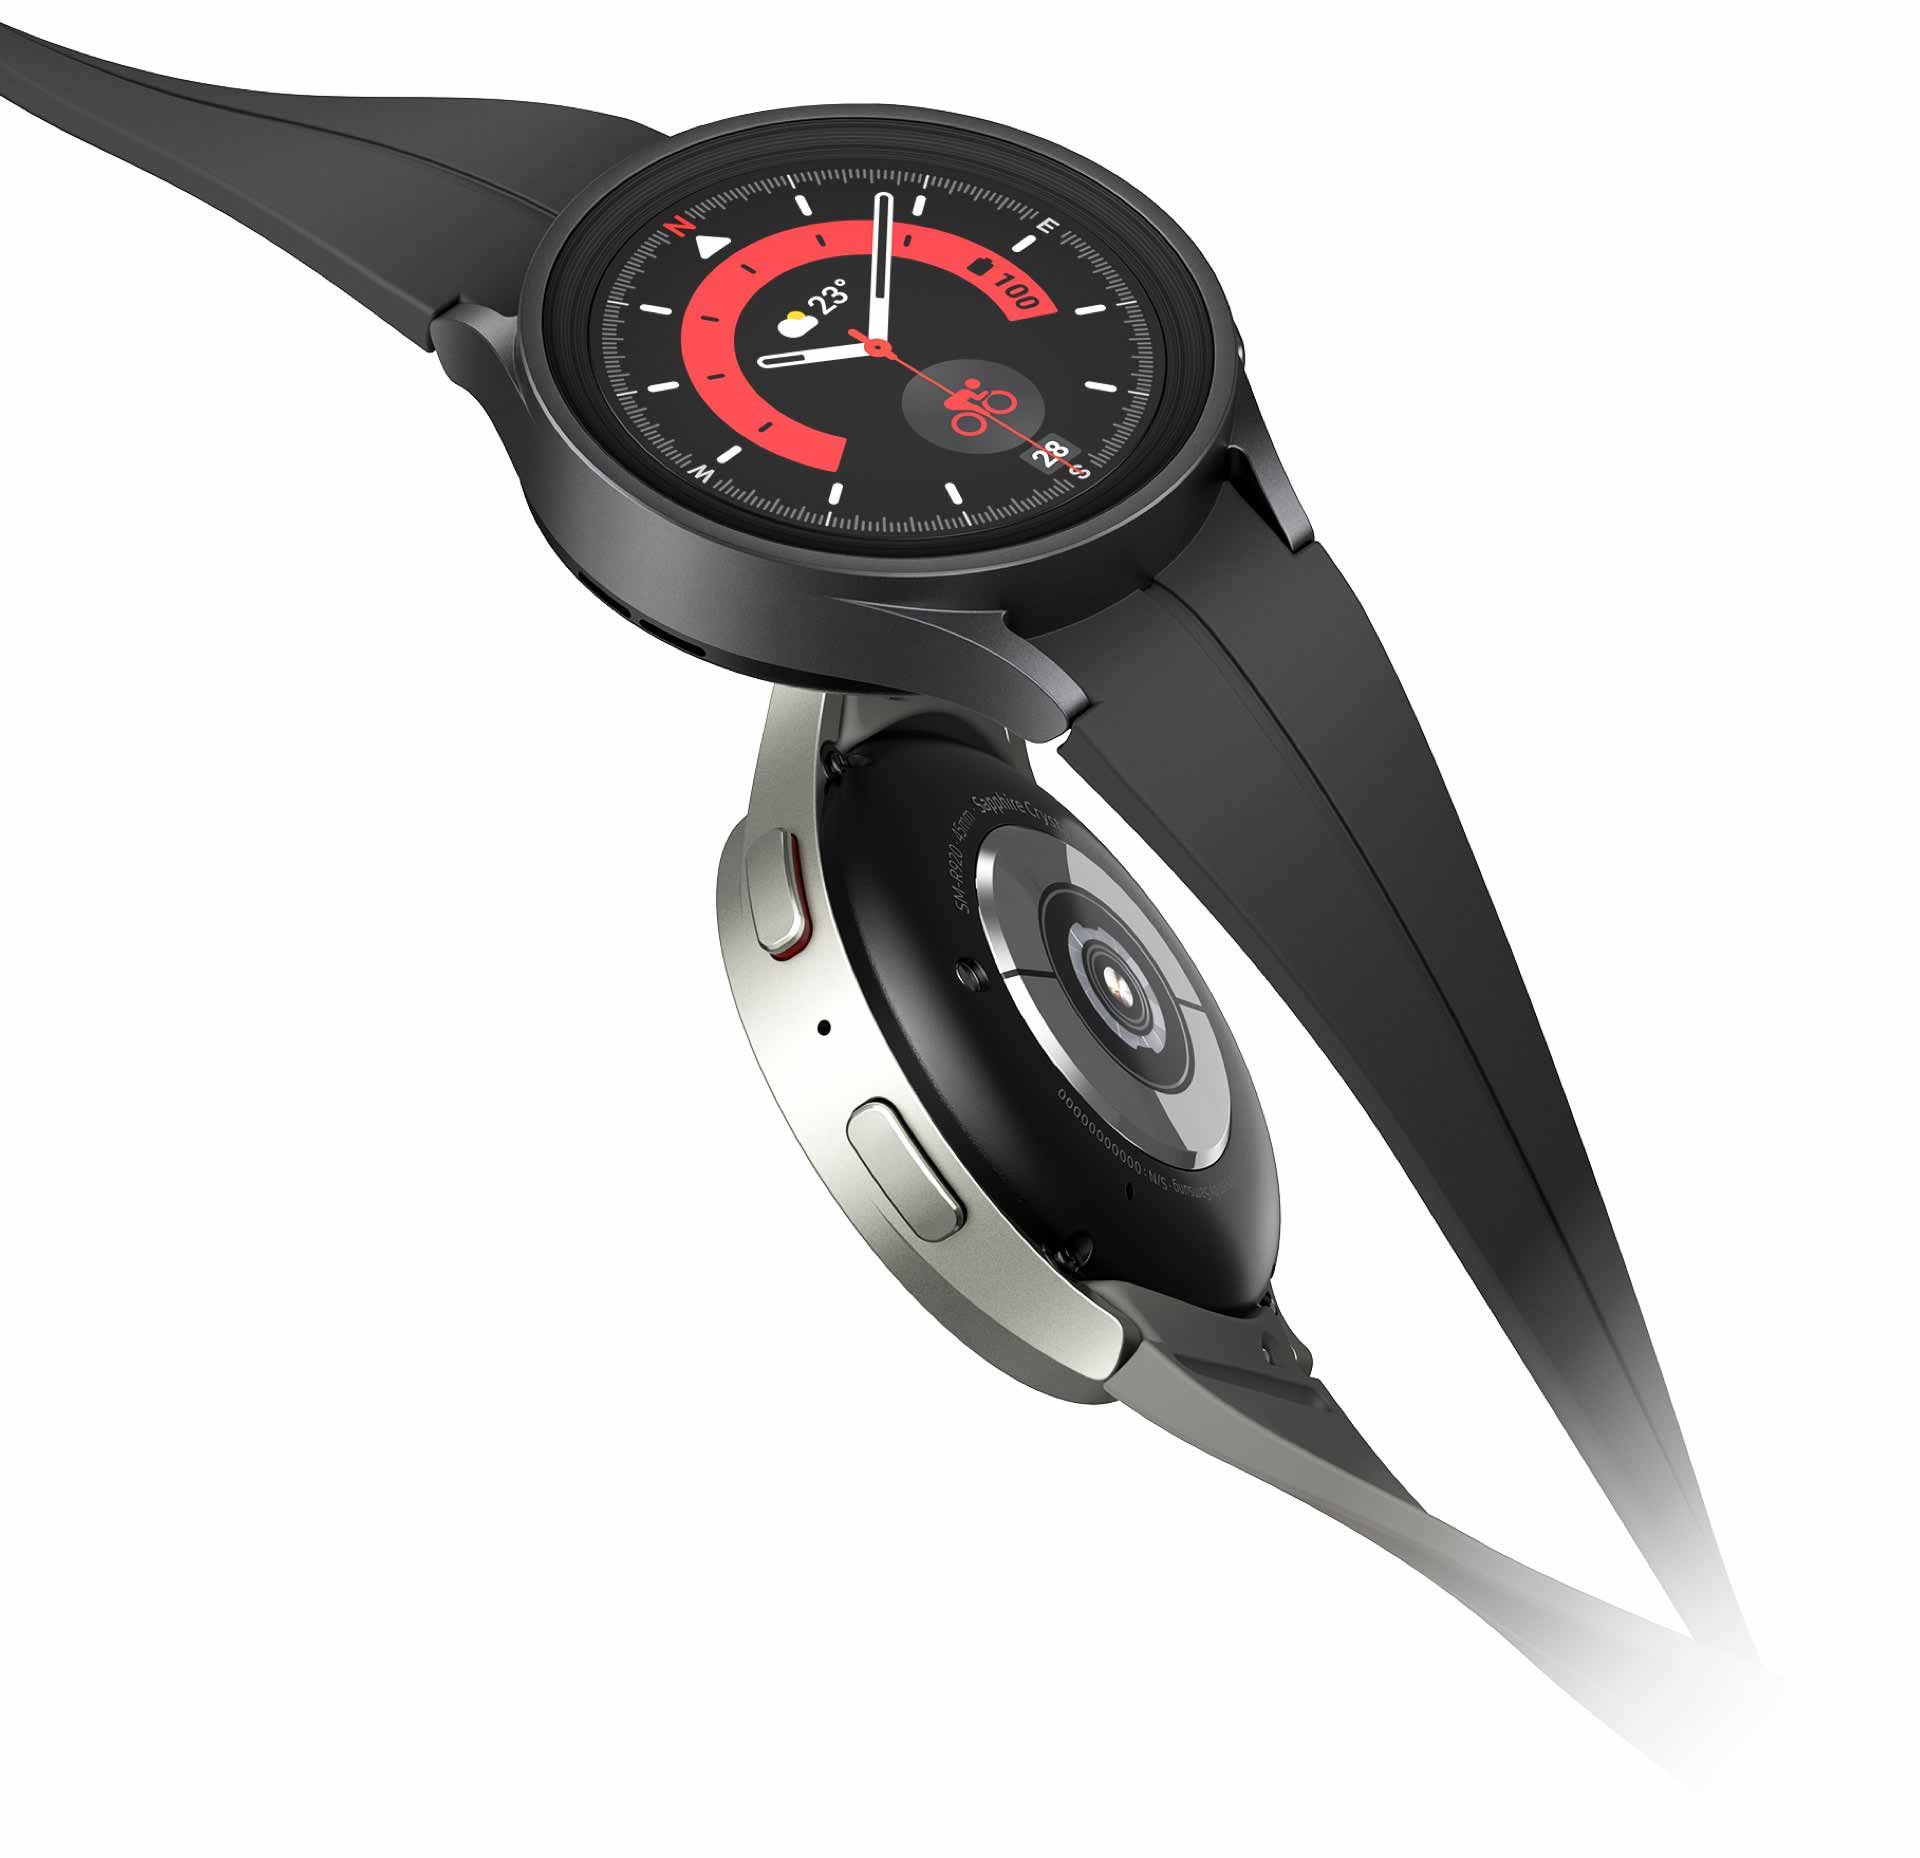 ساعتا Galaxy Watch5 Pro متشابكتان مع بعضهما البعض. تعرض ساعة Galaxy Watch5 Pro السوداء في الأعلى الوقت على وجه الساعة، بينما تعرض ساعة Galaxy Watch5 Pro الرمادية في الأسفل الأزرار الجانبية، ويحتوي الجزء السفلي من الساعة على Bio Sensor IC.